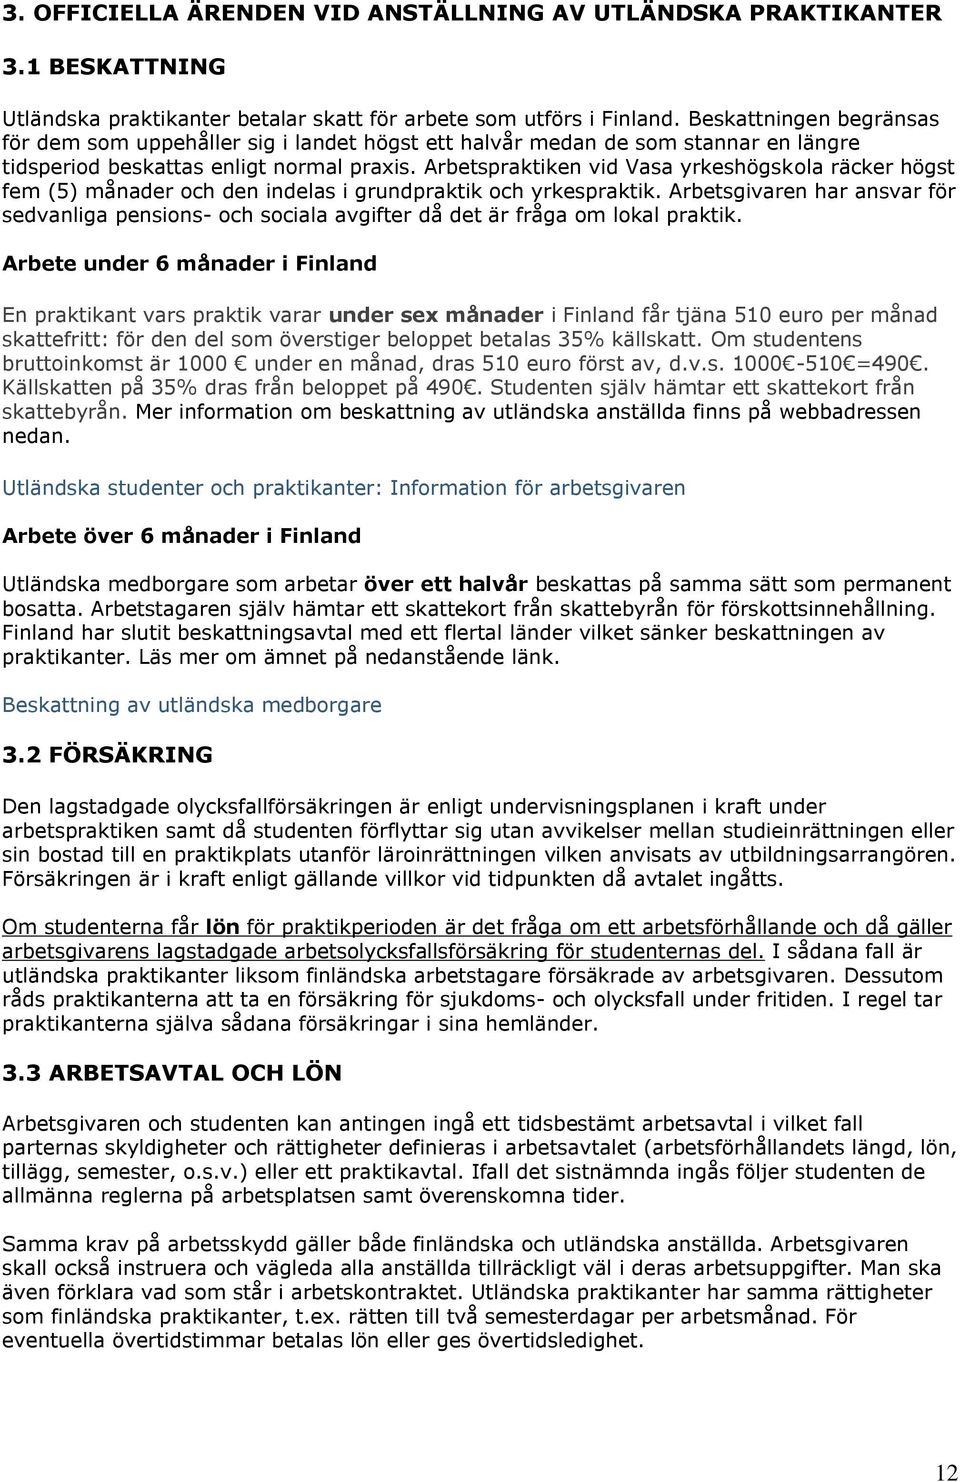 Arbetspraktiken vid Vasa yrkeshögskola räcker högst fem (5) månader och den indelas i grundpraktik och yrkespraktik.